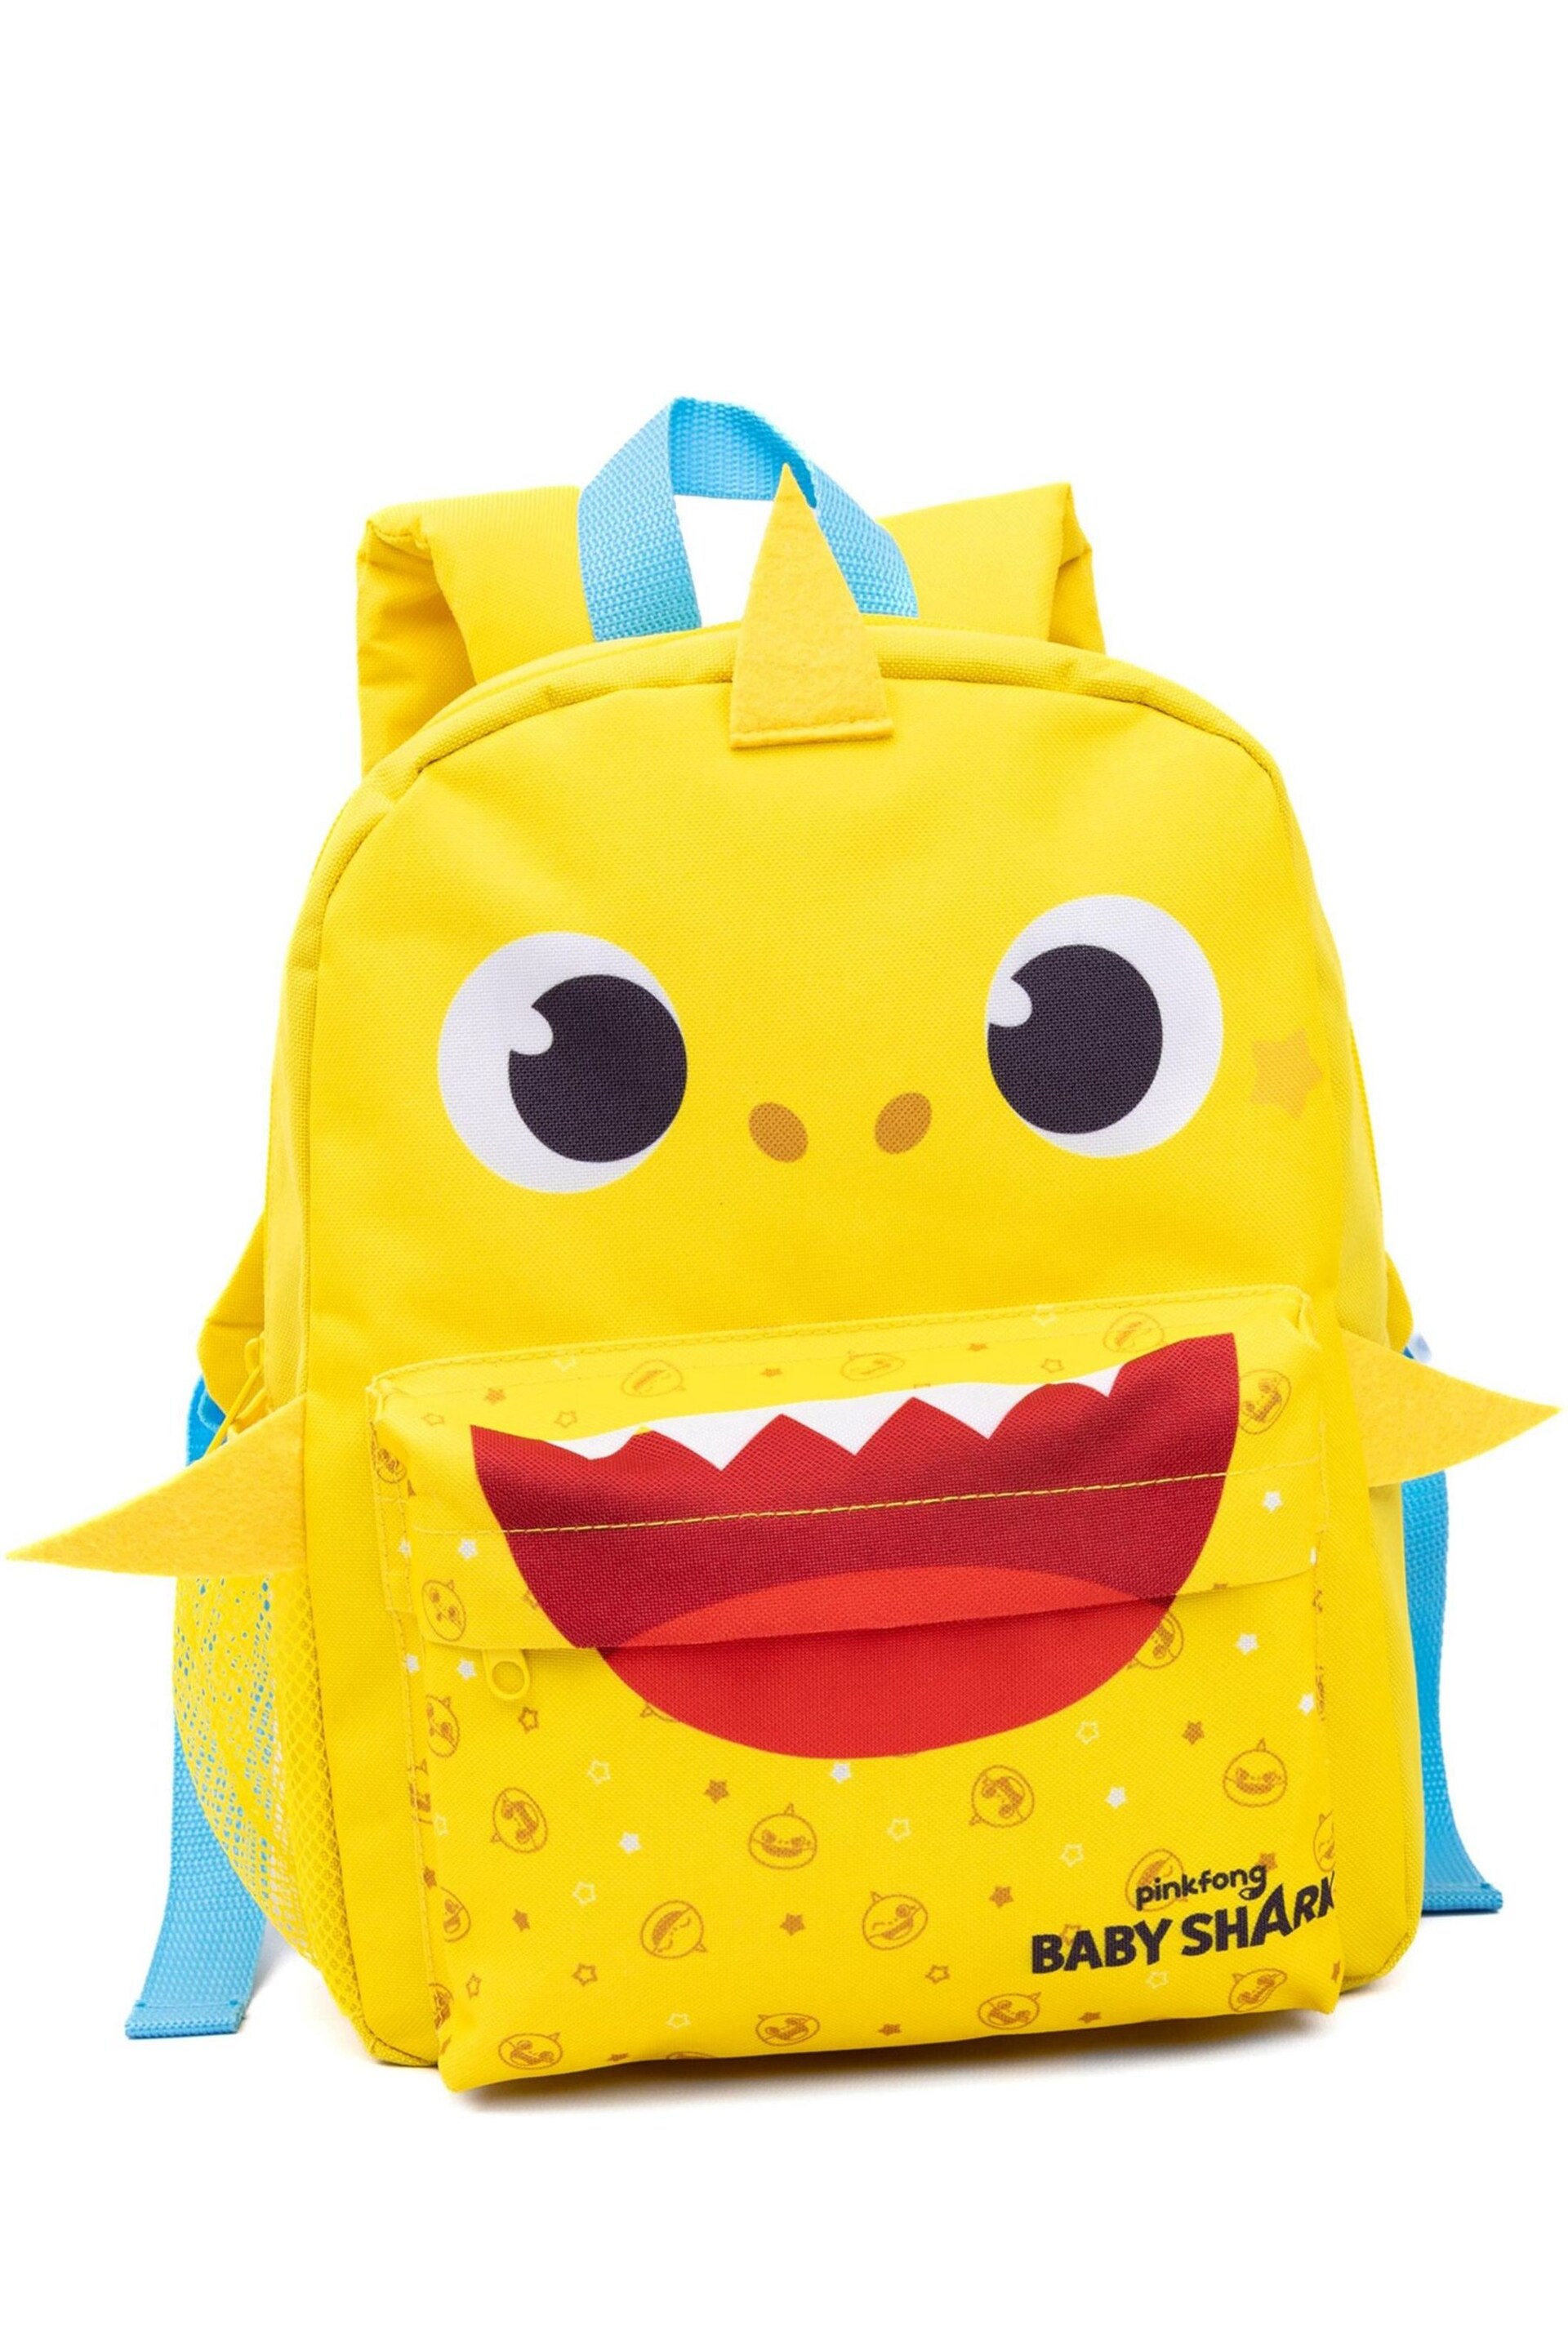 Vanilla Underground Yellow Baby Shark Baby Shark Backpack Set - Image 2 of 5